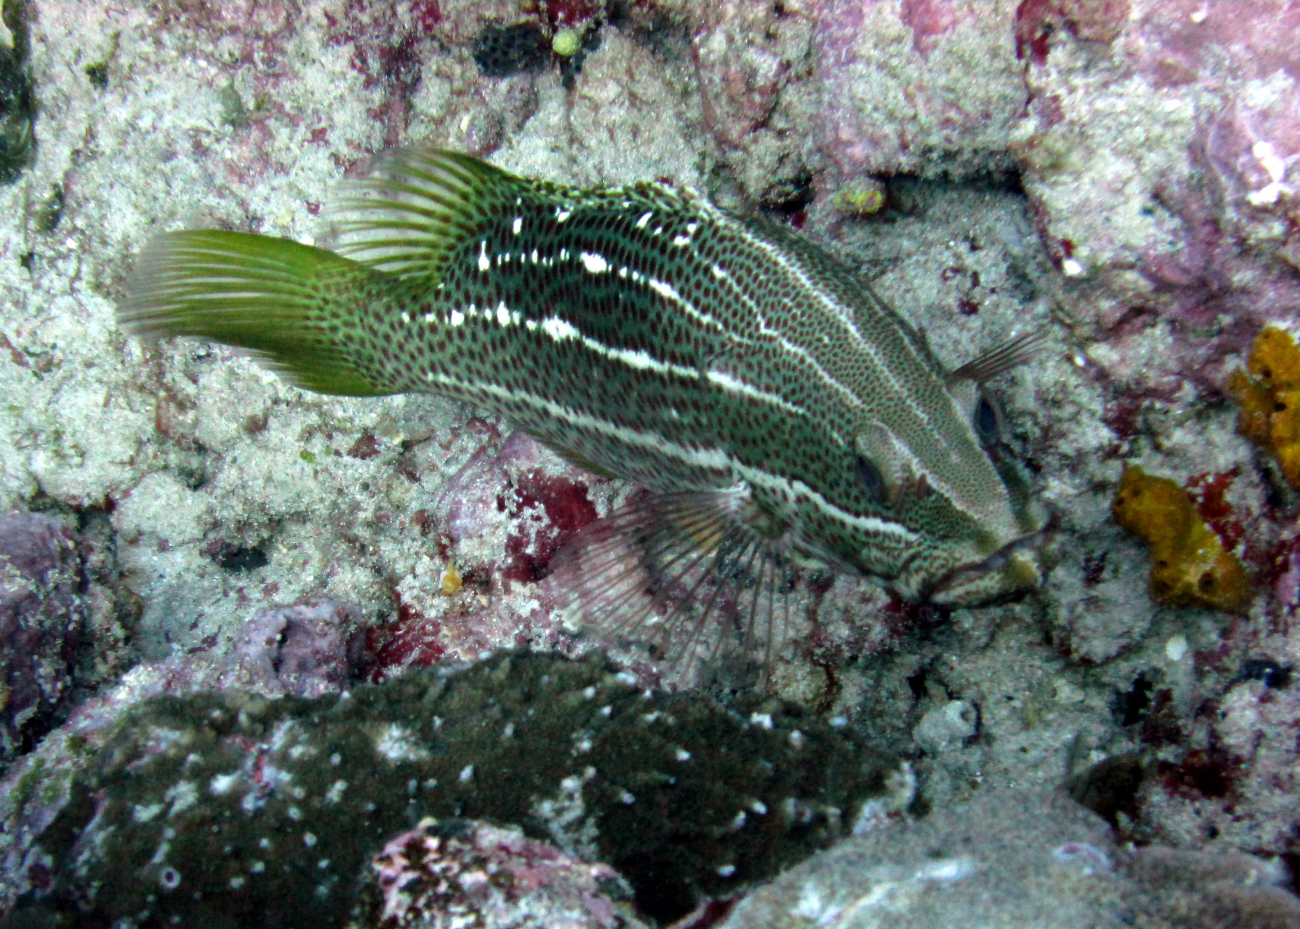 Slender grouper (Anyperodon leucogrammicus)